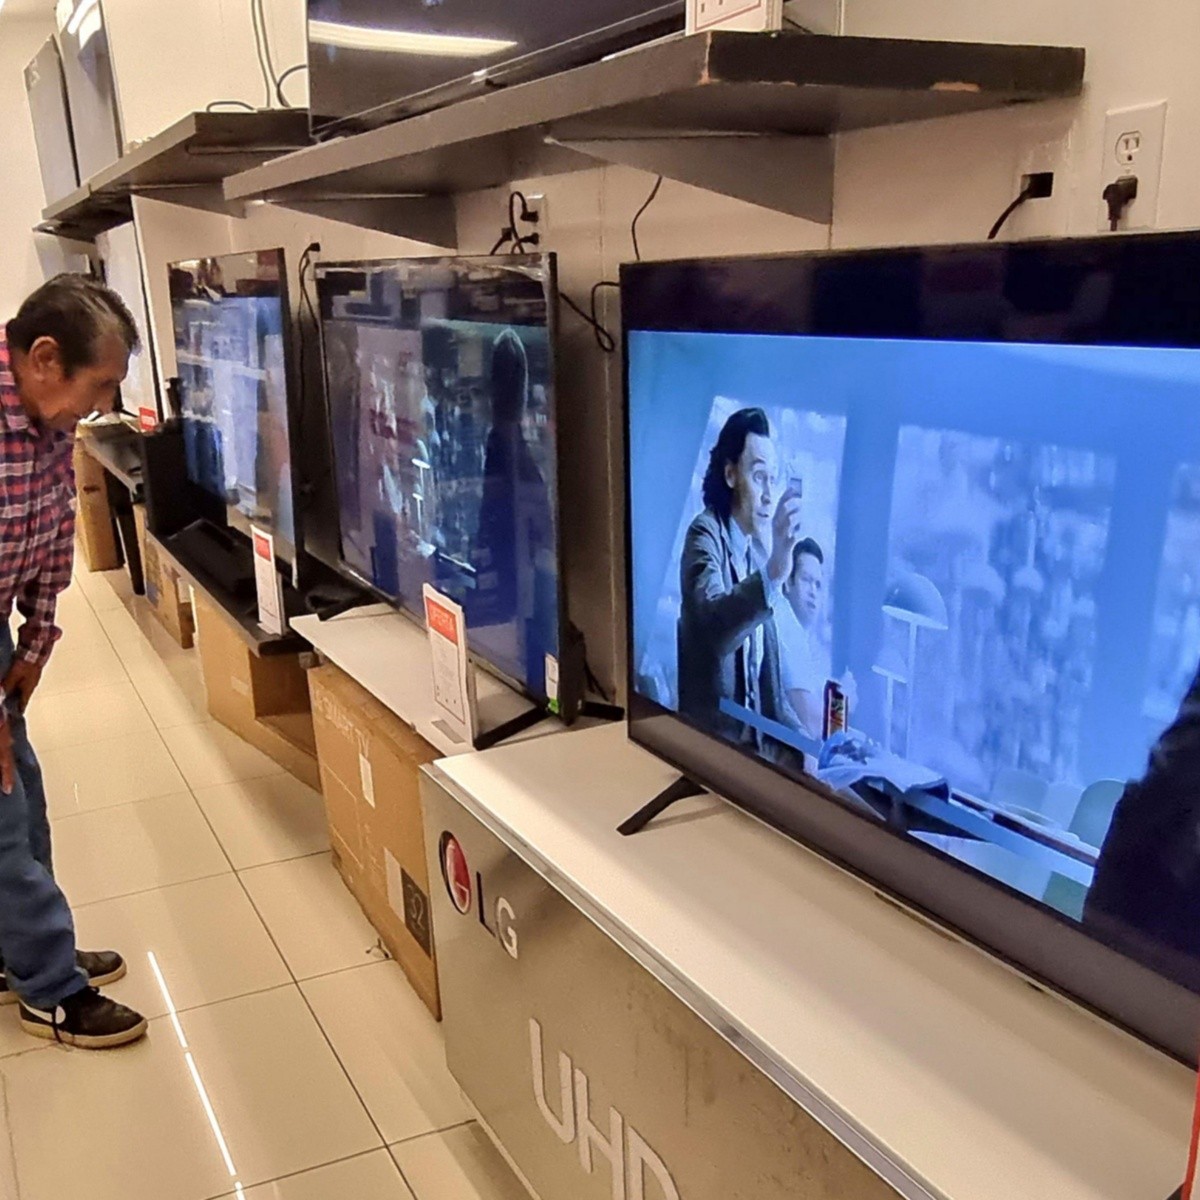 Las ofertas de junio de  dejan esta Smart TV de Samsung de 43